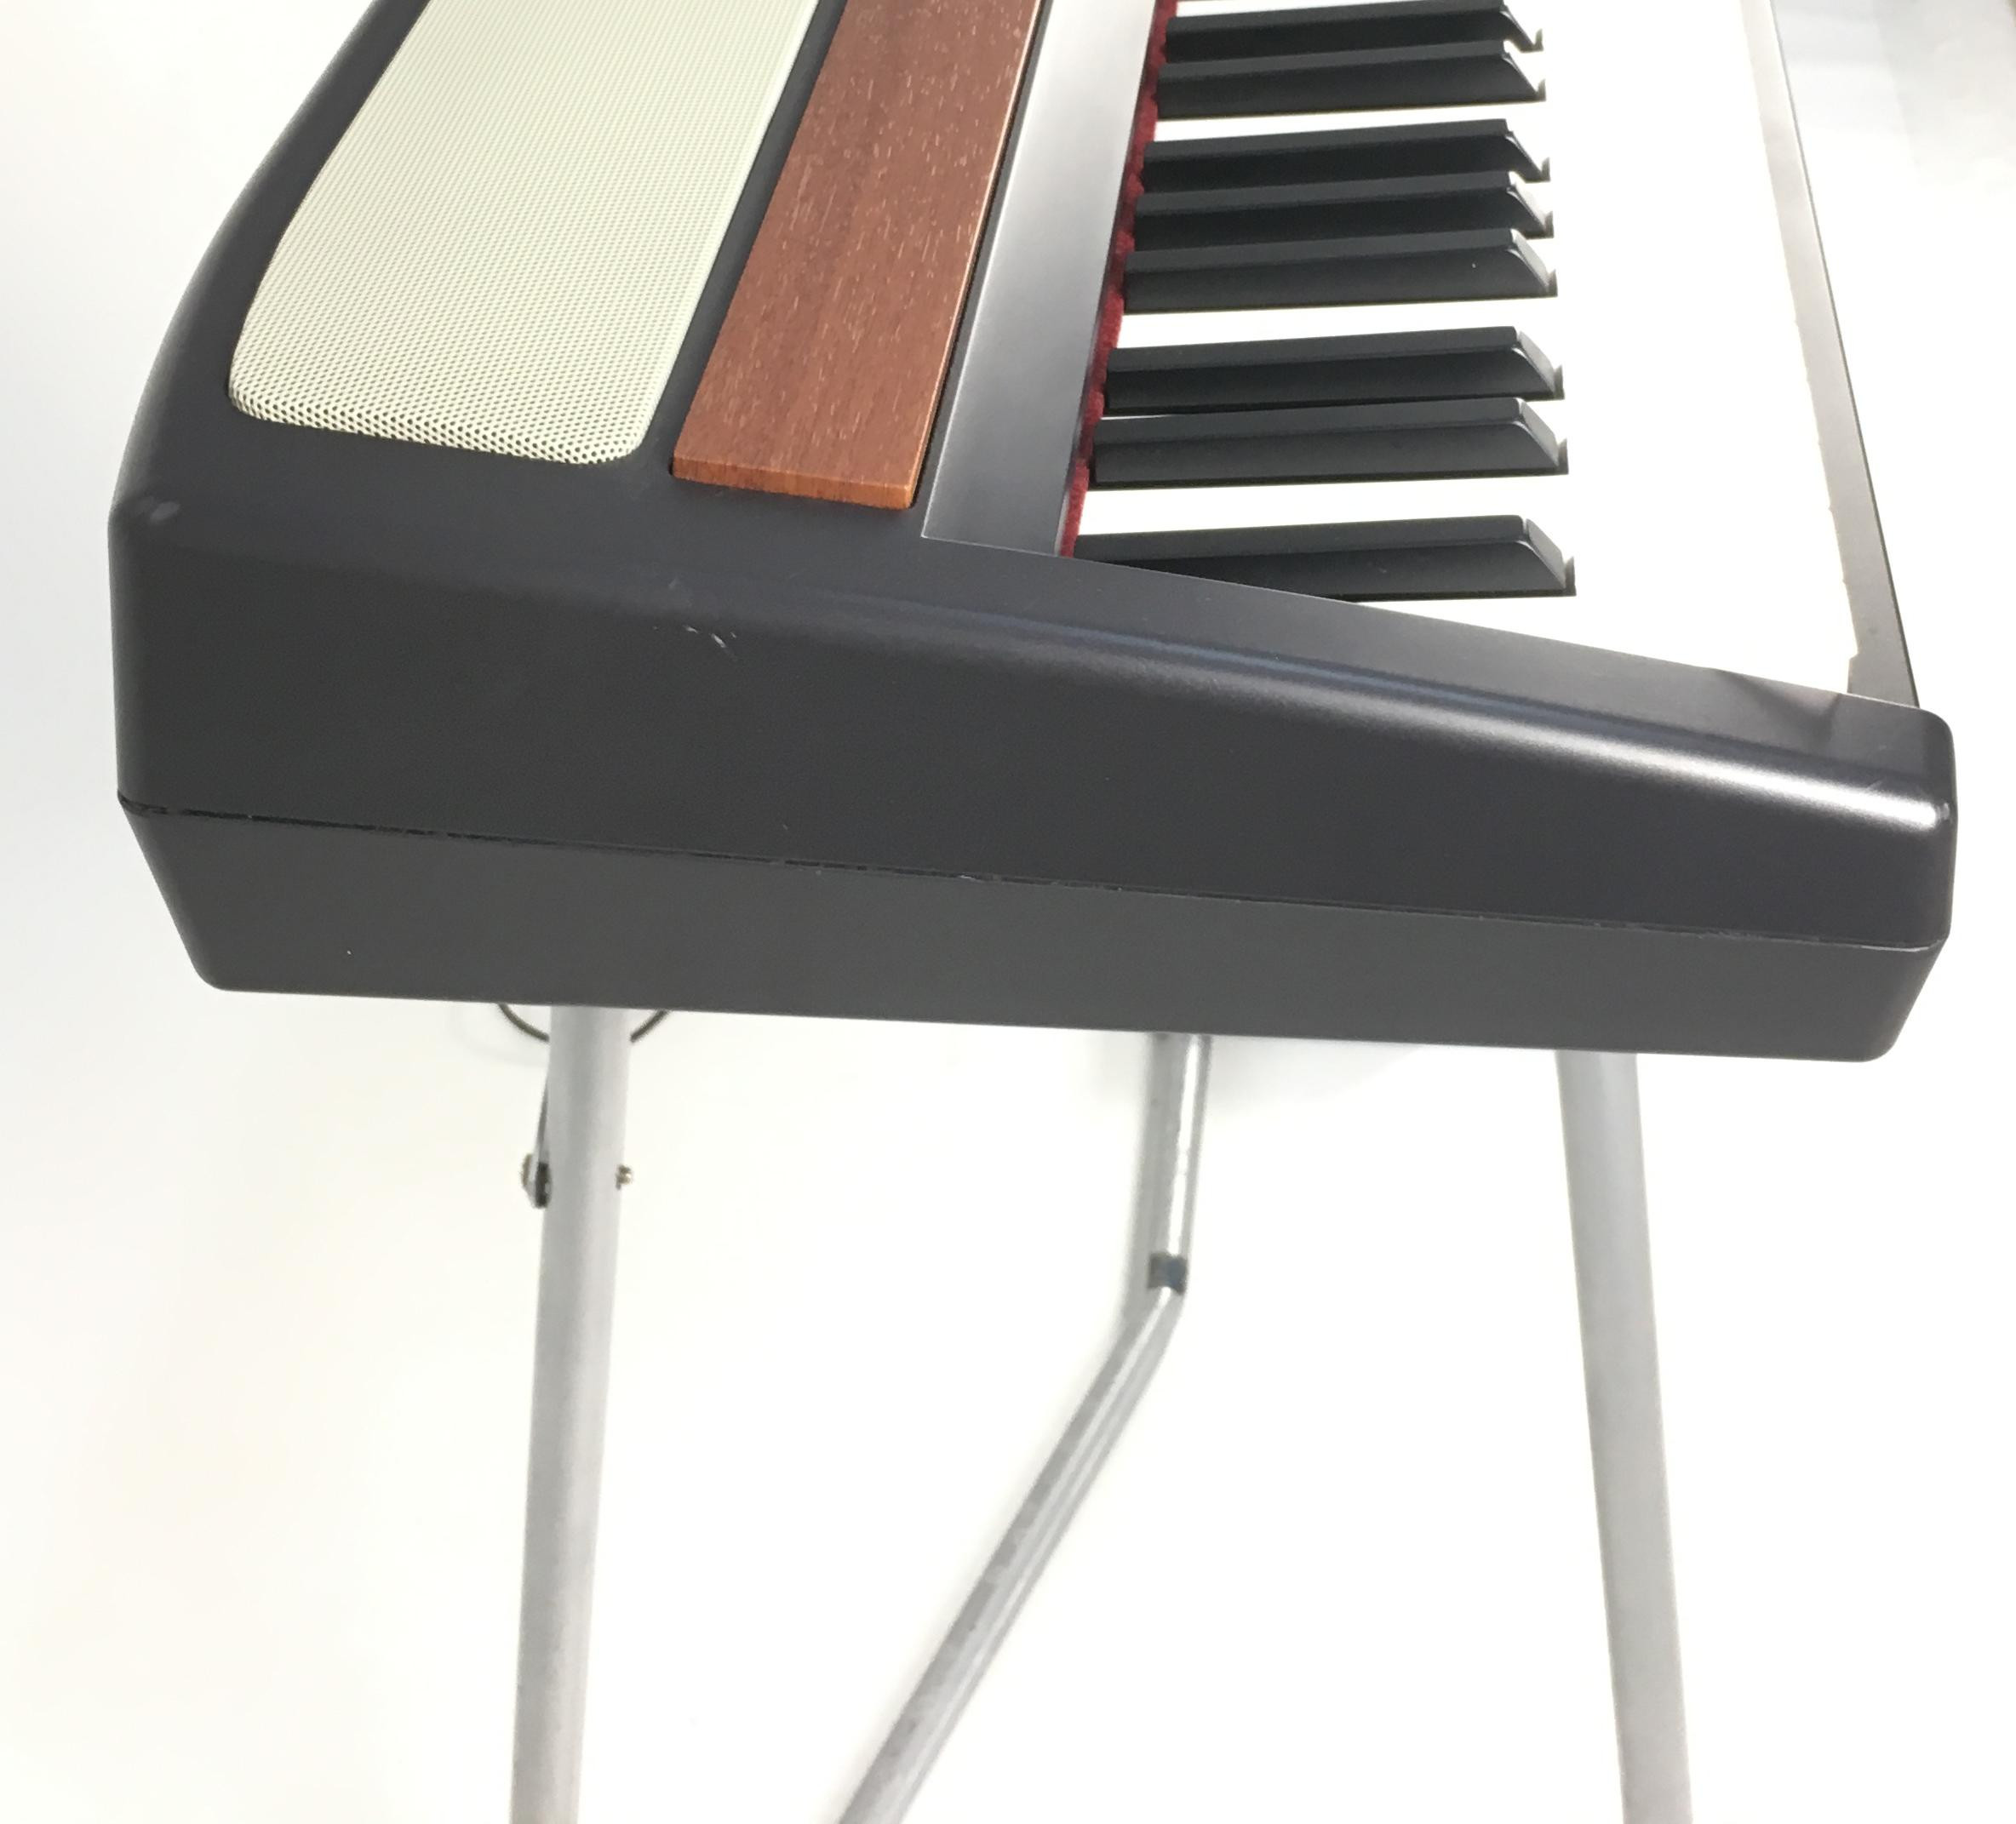 Korg SP 250 | Pianoforti Digitali Korg